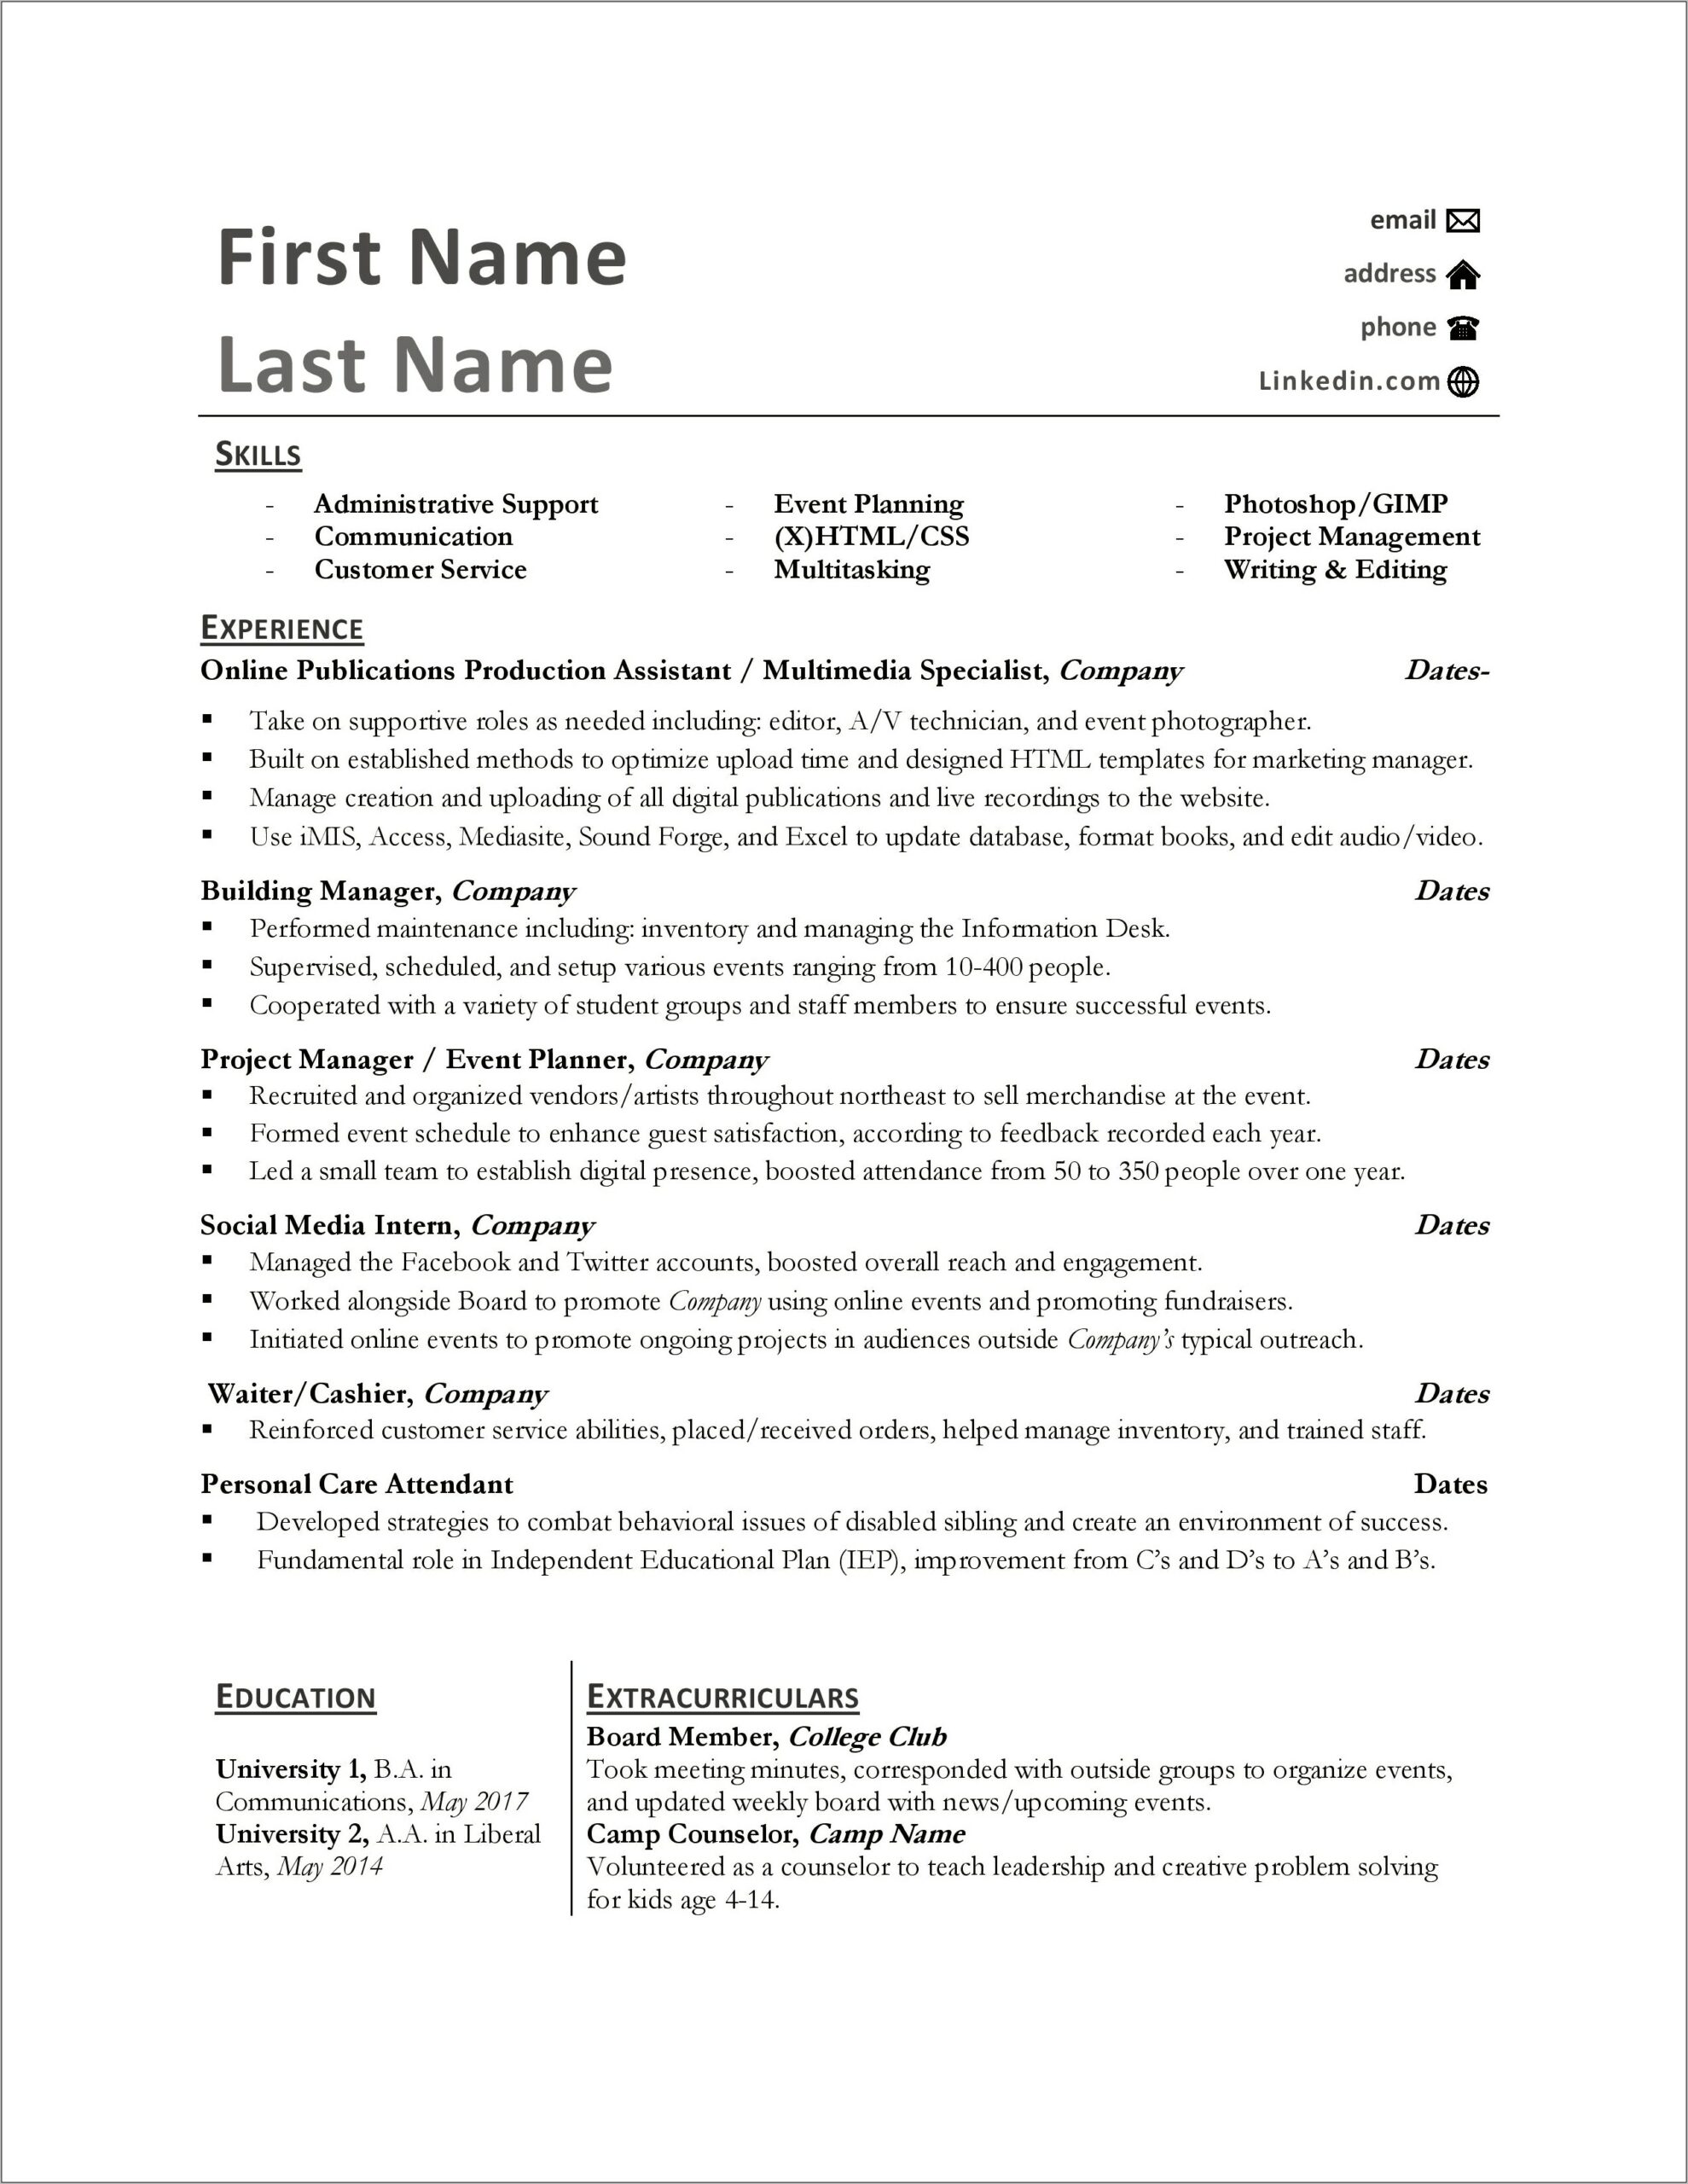 Multiple Job Titles On Resume